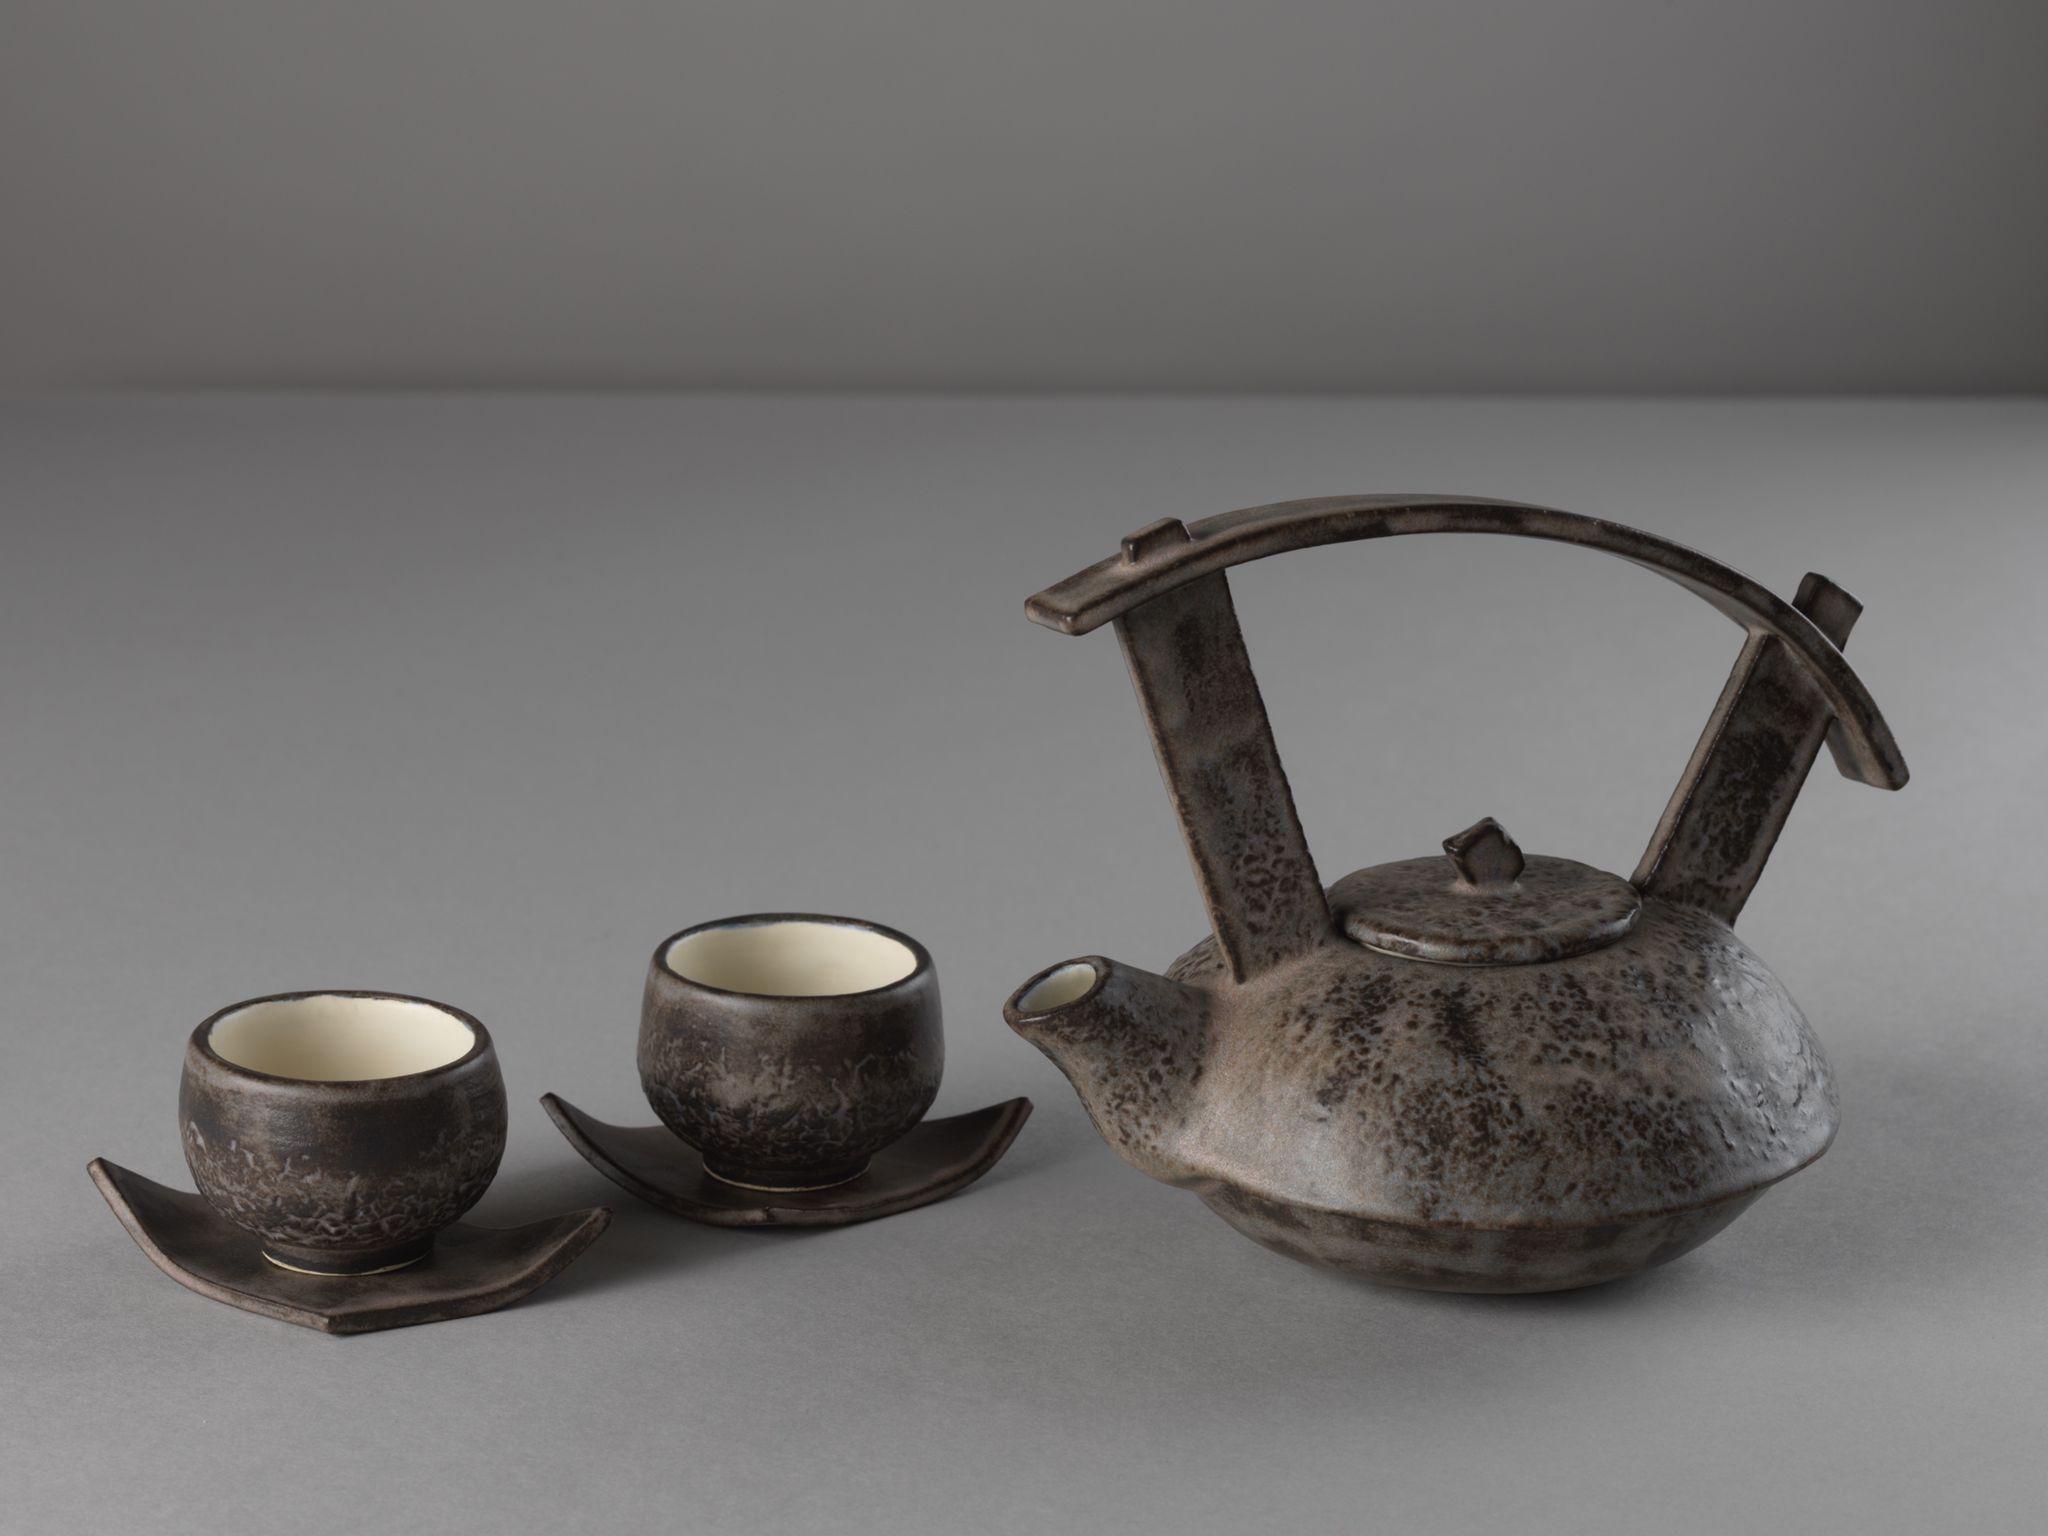 茶具文物館現正舉行「陶瓷茶具創作展覽2021」。圖示學生組亞軍得主黎昕橦的作品《磨練》。